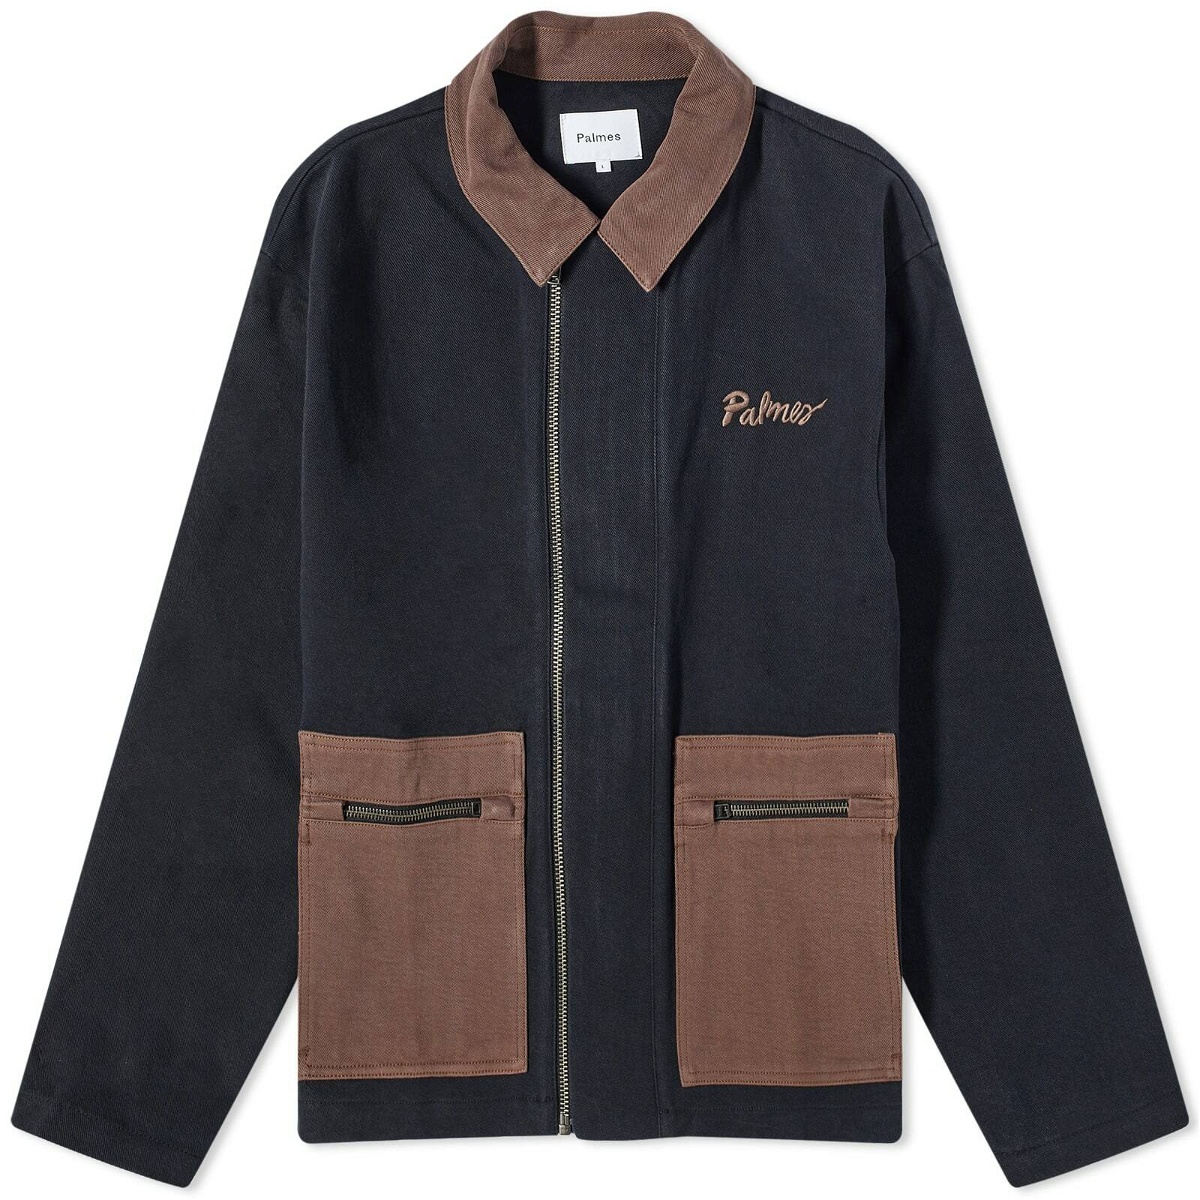 Photo: Palmes Men's Double Zip Jacket in Black/Brown